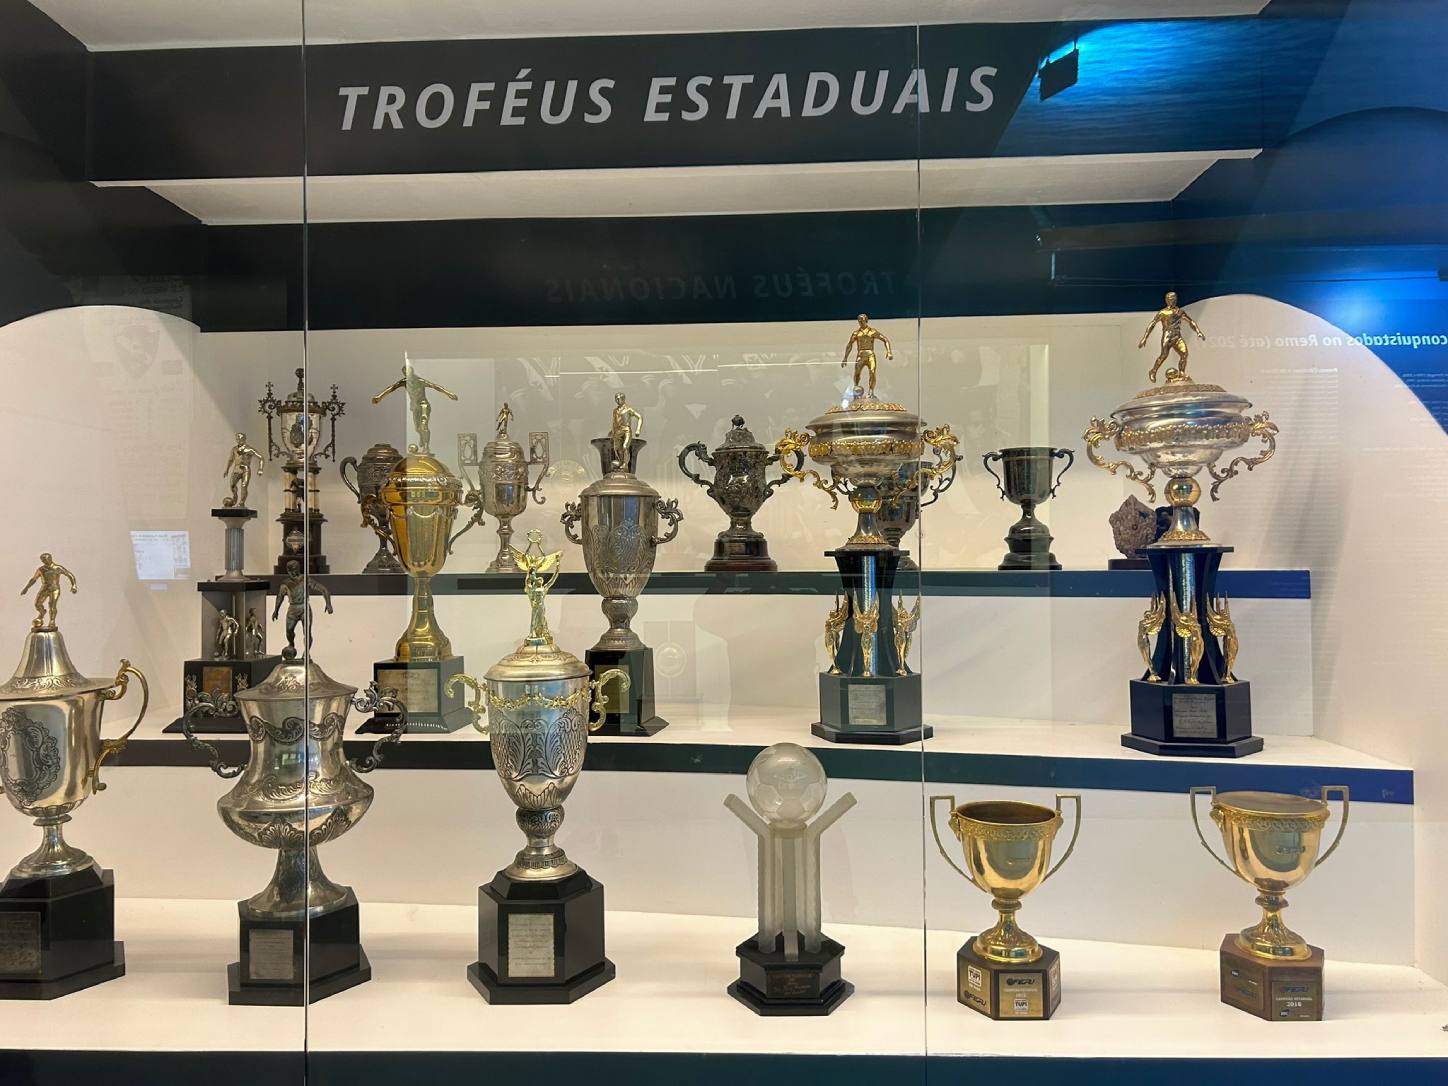 Eric Faria registra troféus estaduais do Vasco em São Januário